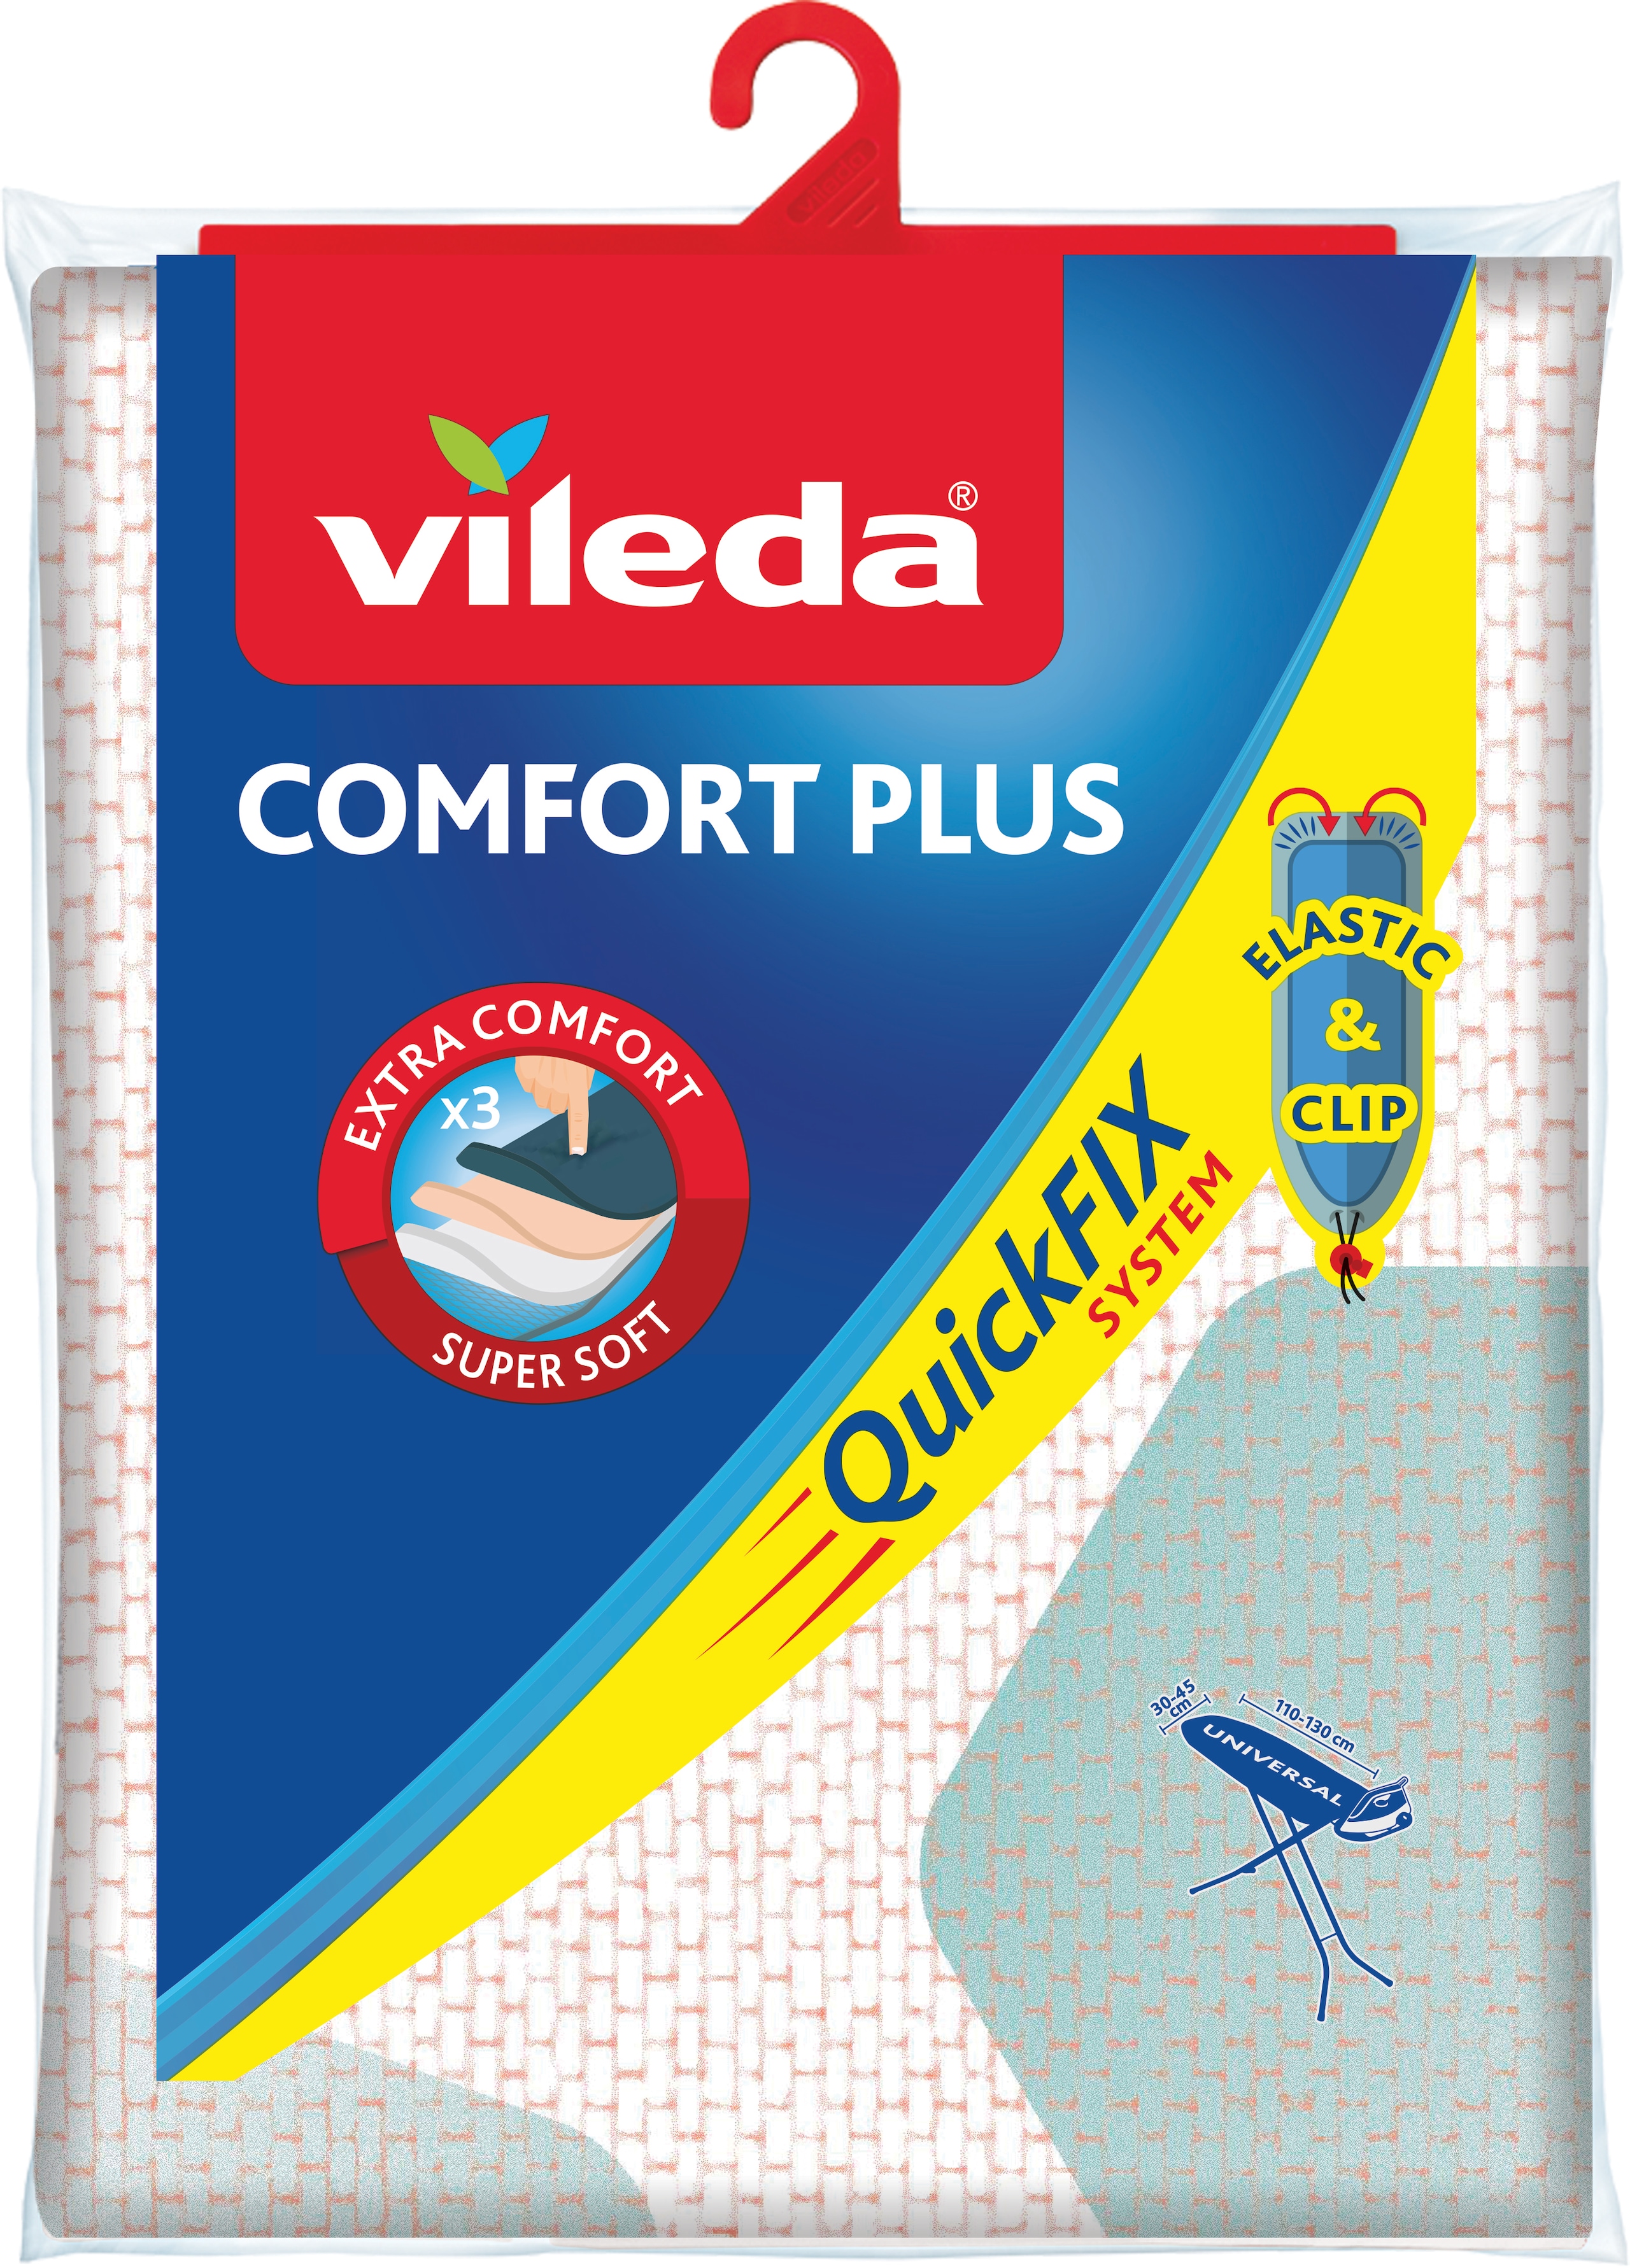 Vileda Comfort Plus: vasalóállvány-huzat többrétegű szivacsos kialakítással